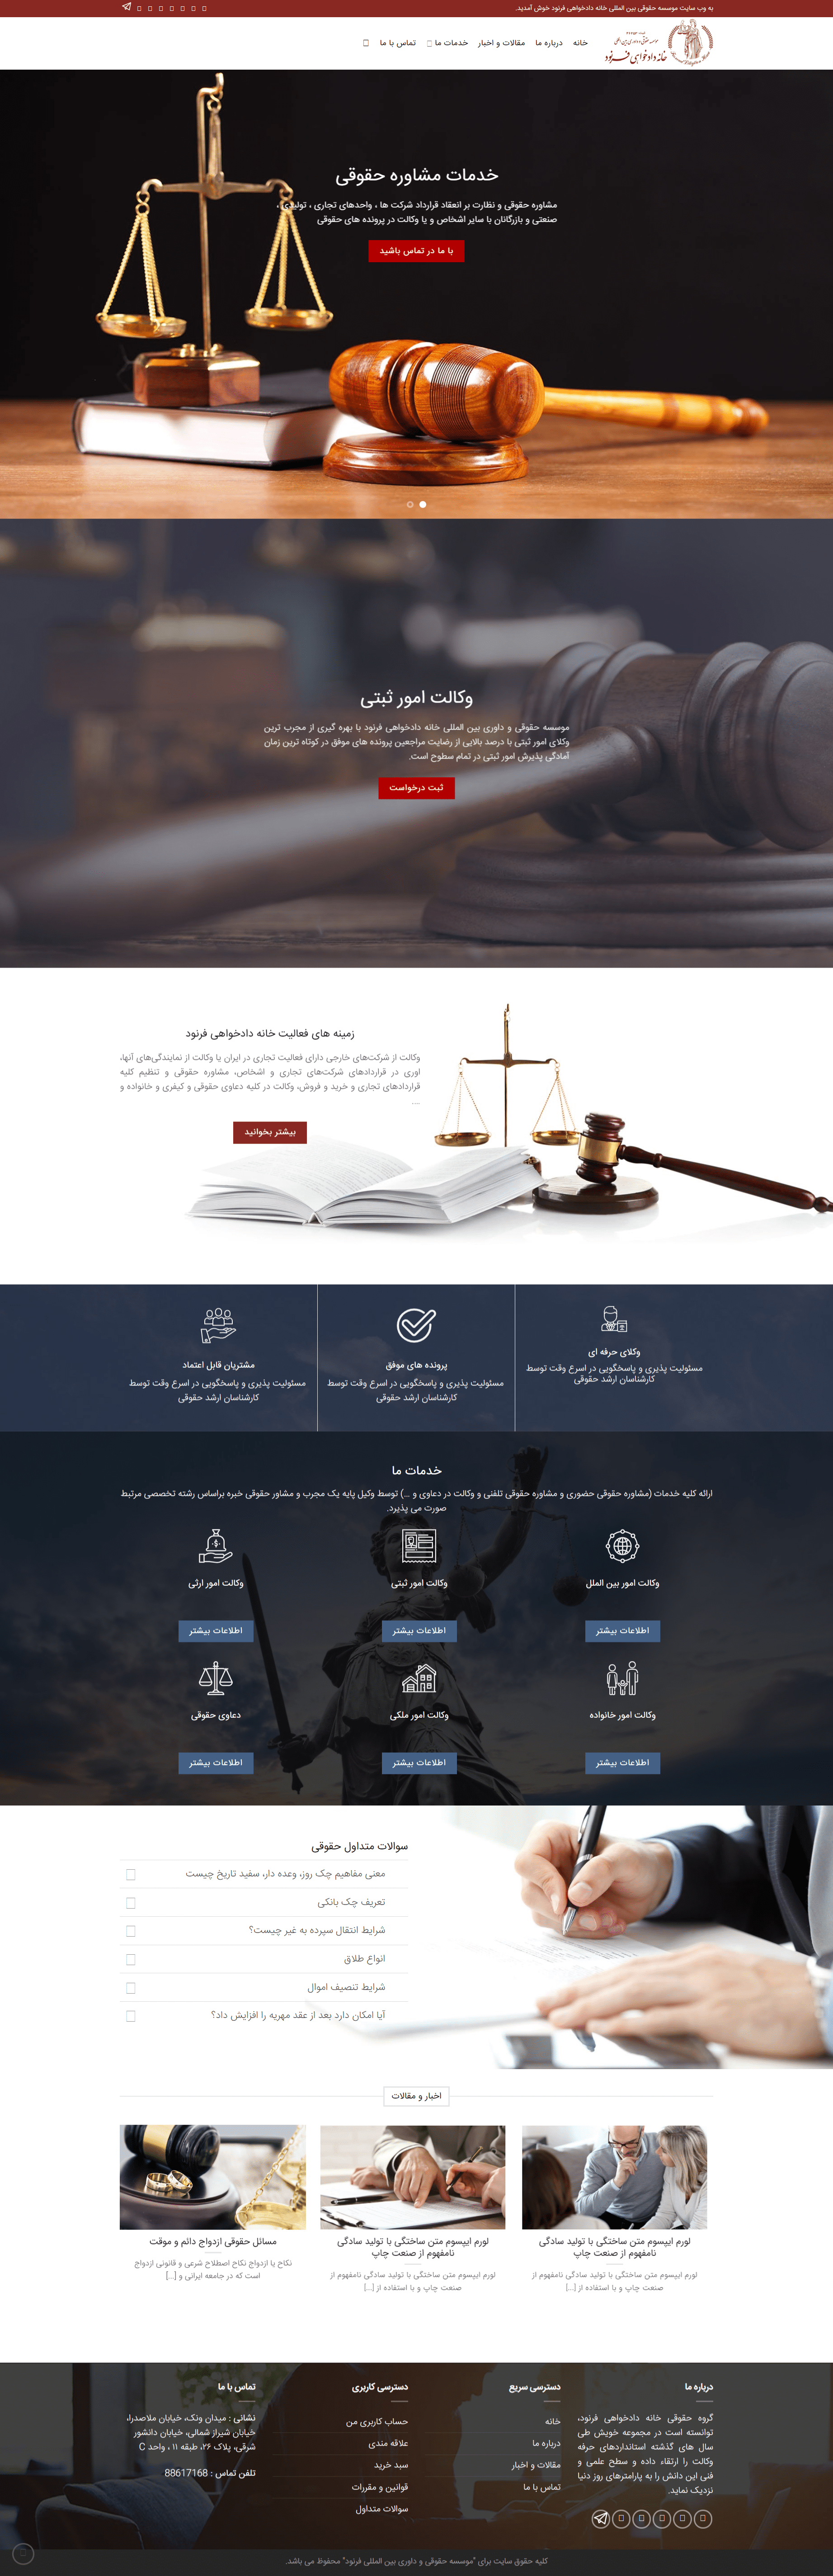 طراحی سایت شرکتی خانه دادخواهی فرنود